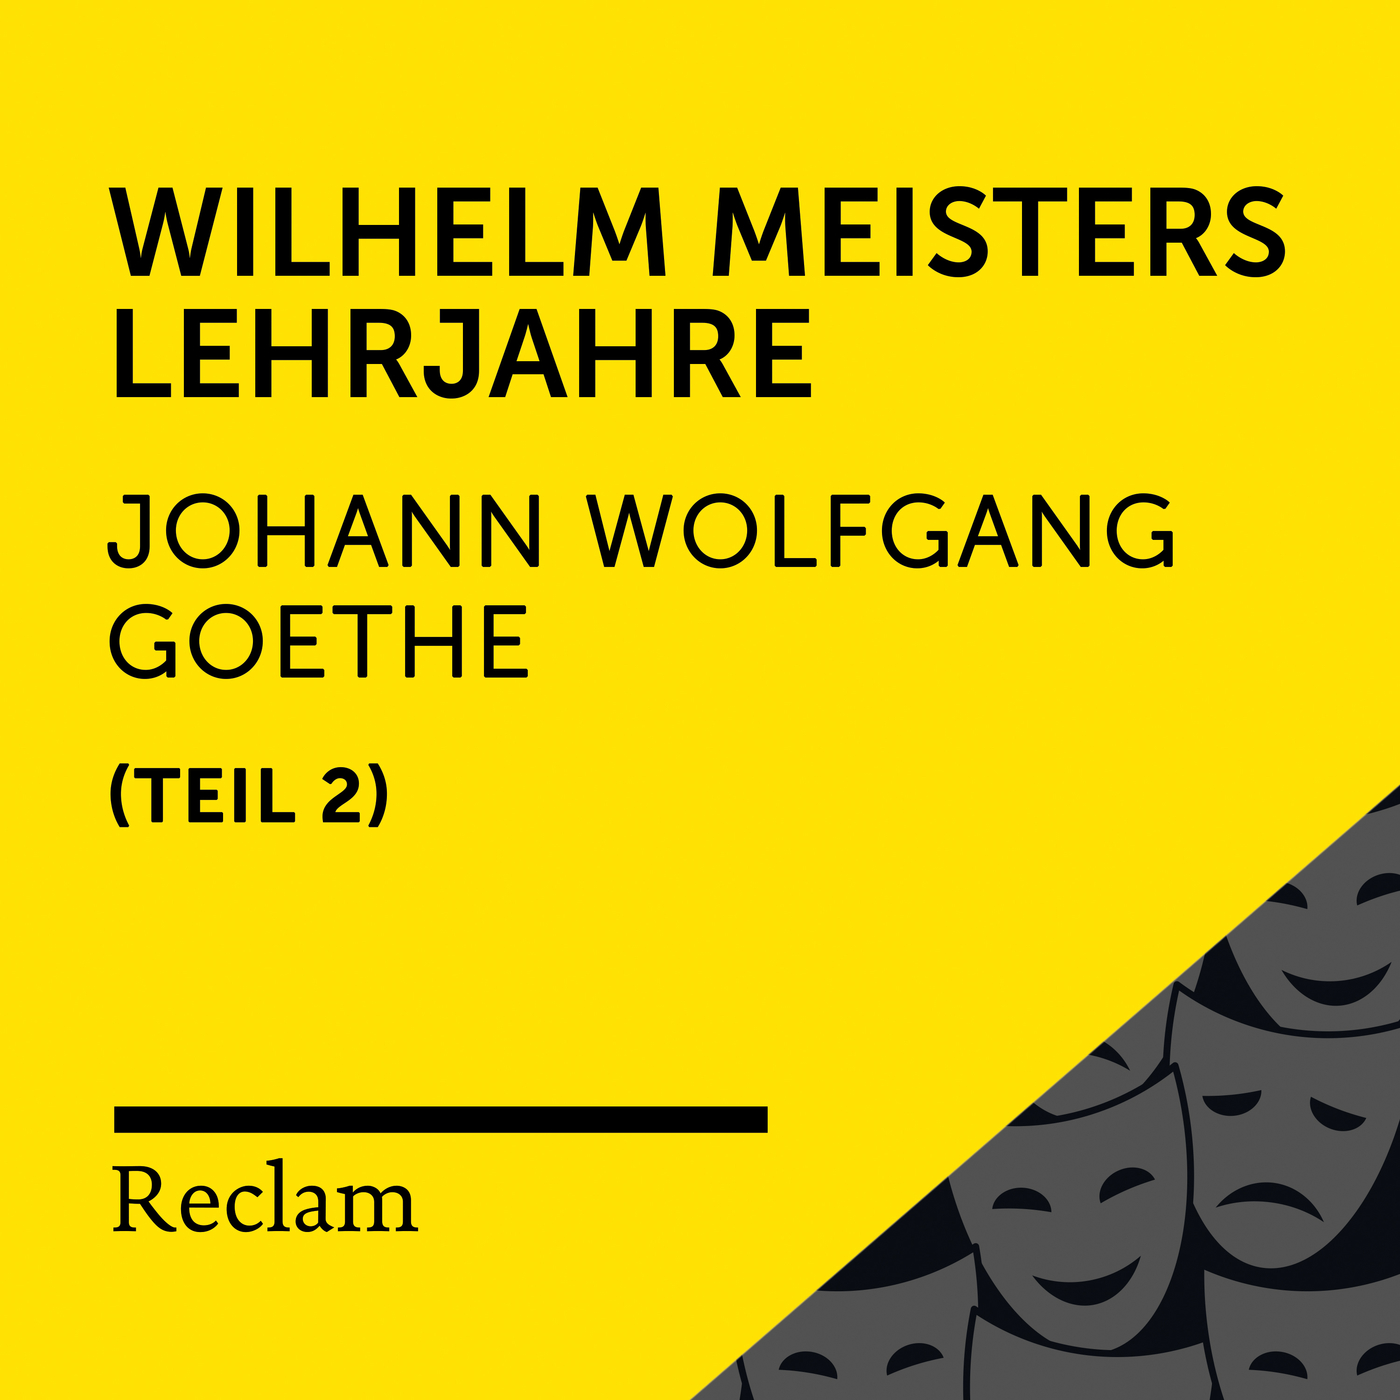 Wilhelm Meisters Lehrjahre, Buch 6 (Kapitel I, Teil 75)